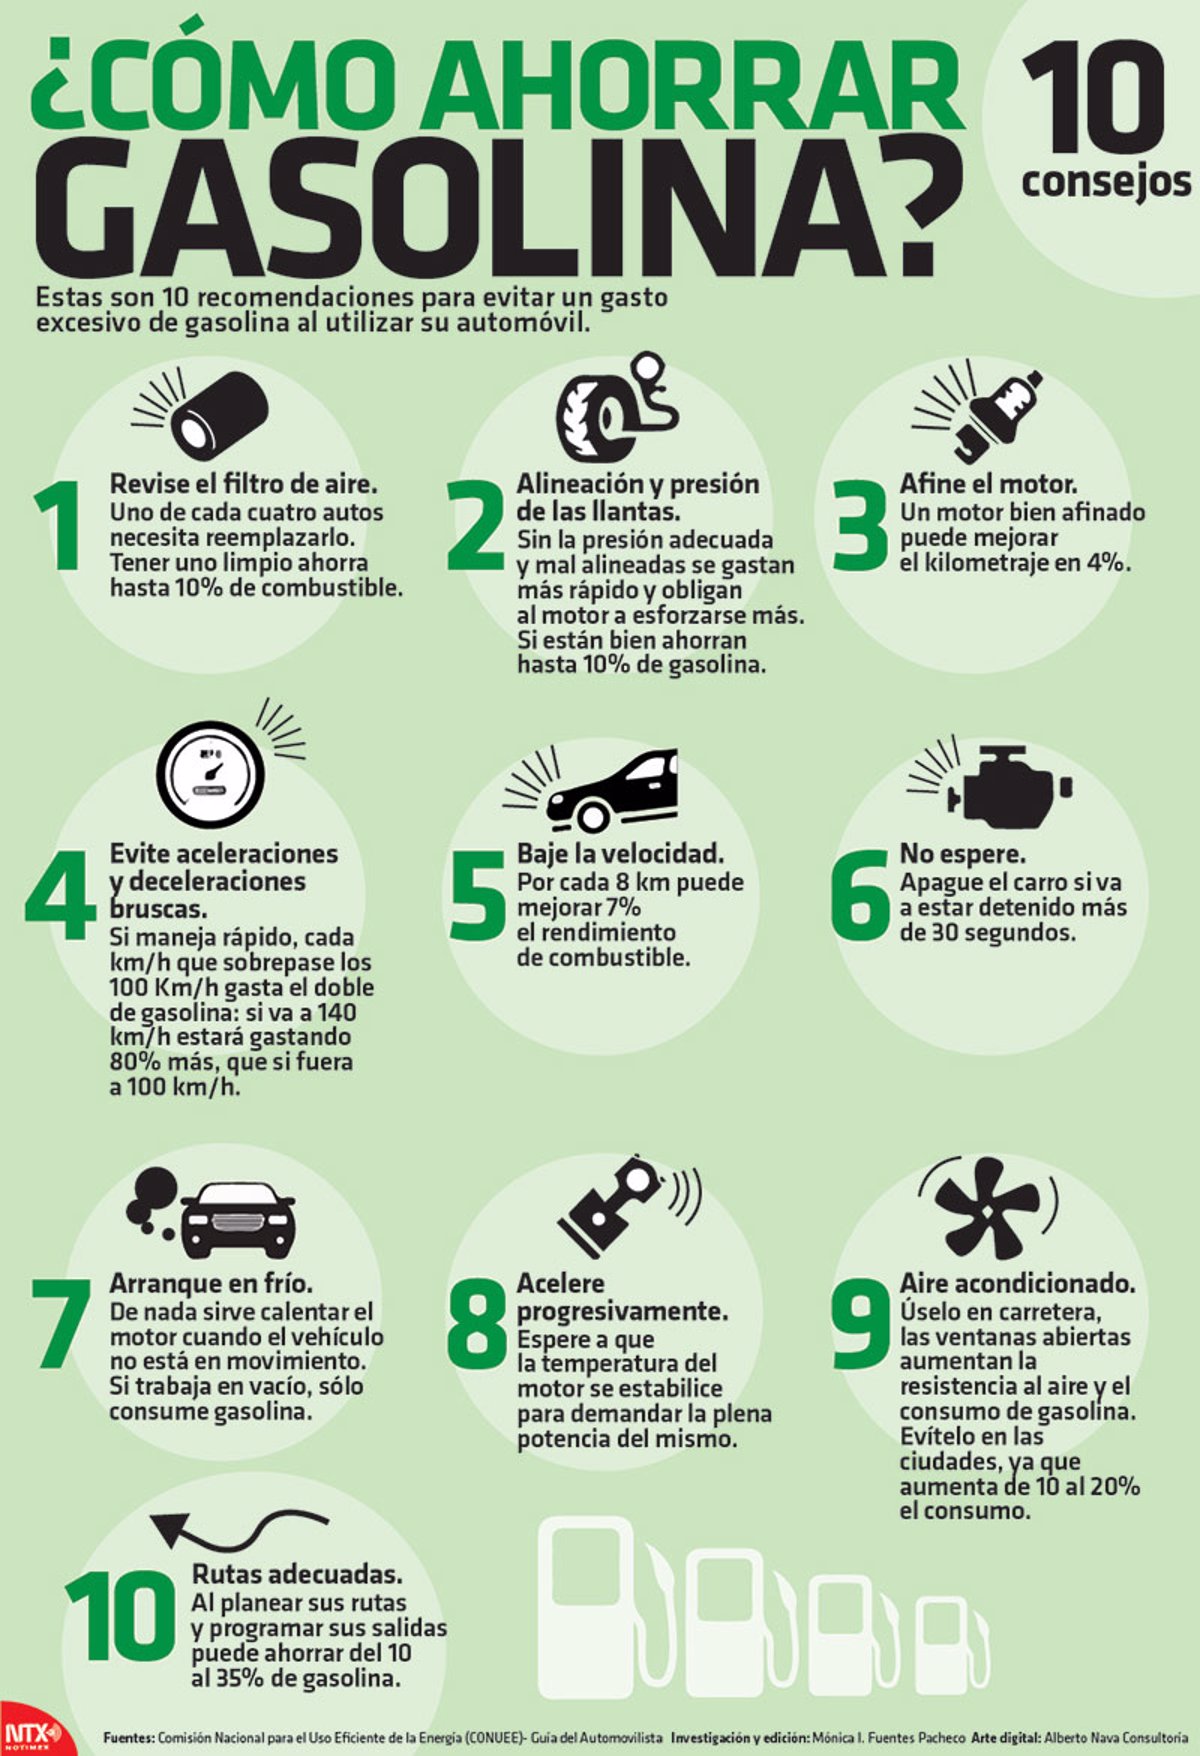 6 consejos prácticos para ahorrar gasolina en tu vehículo y cuidar el medio ambiente